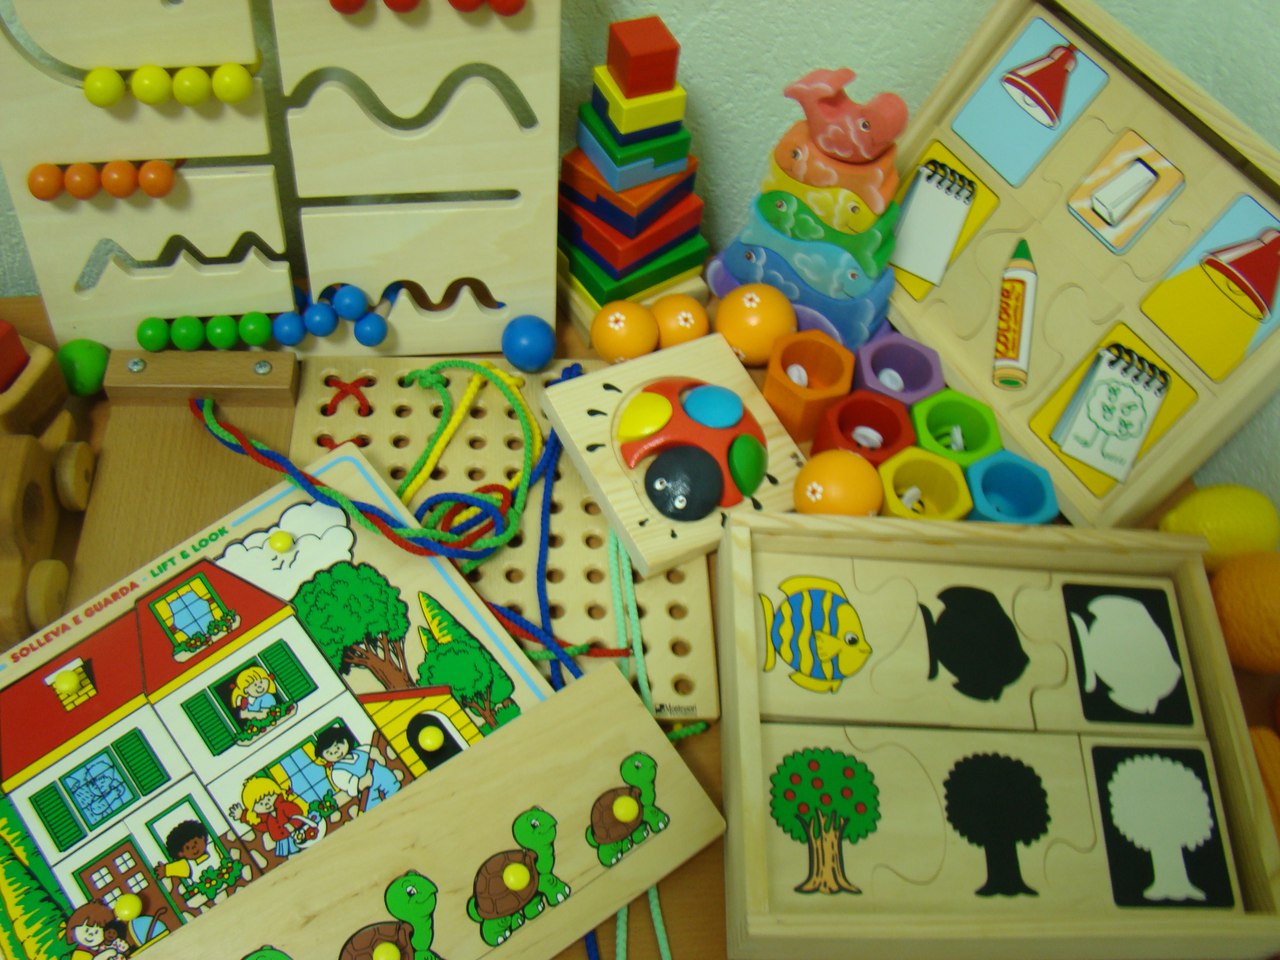 Игры развивающие для детей в детском саду